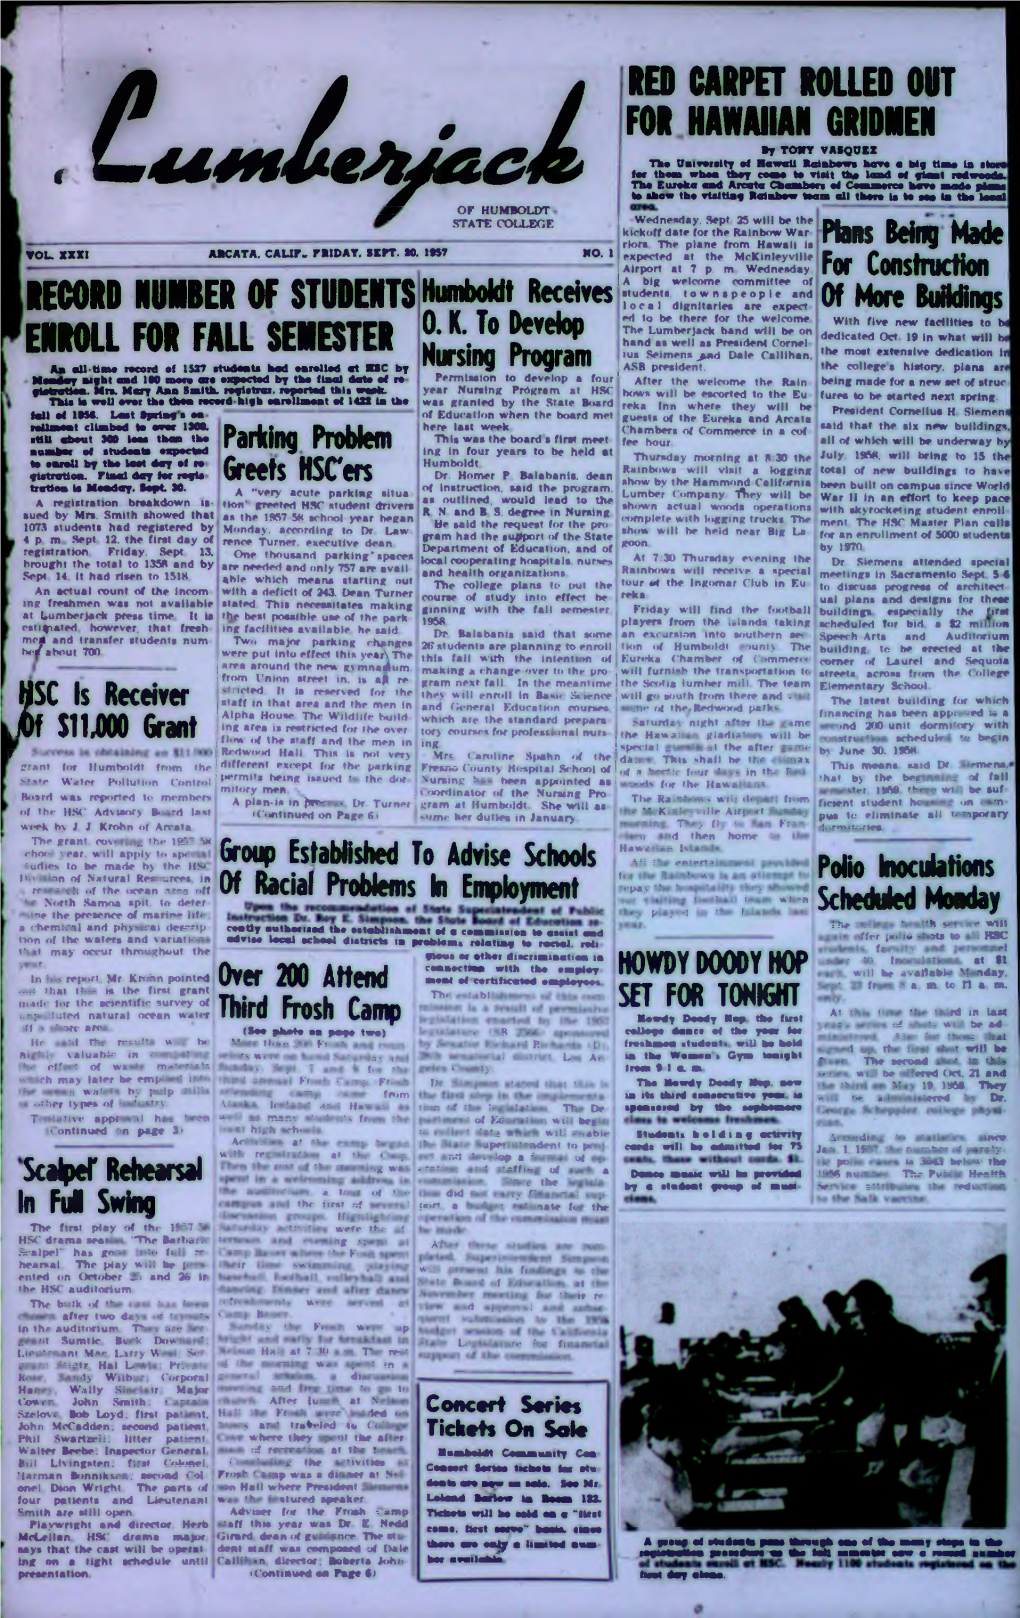 The Lumberjack, September 20, 1957